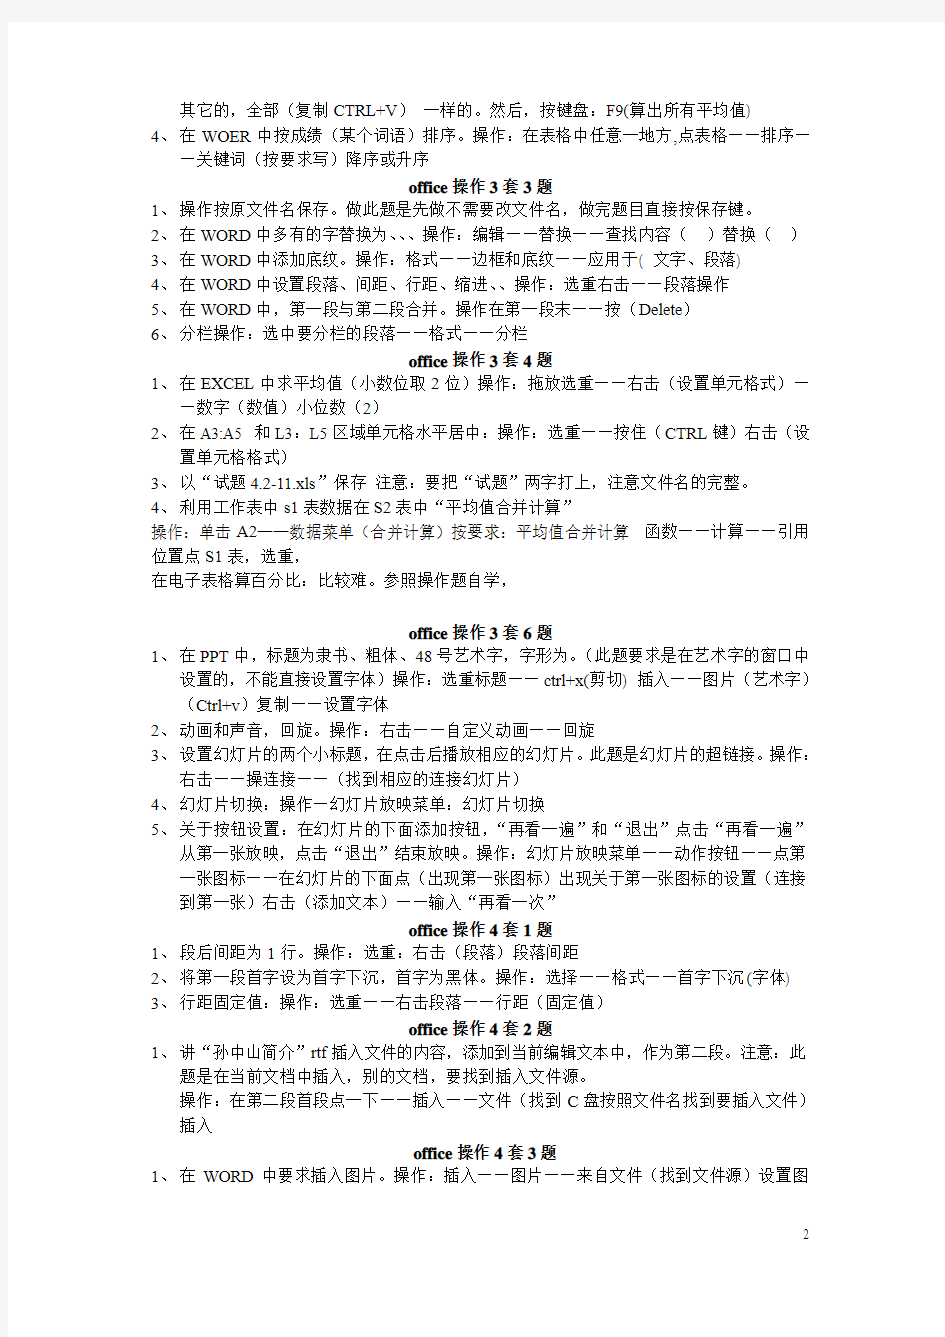 2014年江苏计算机职称考试 操作题常要记住的